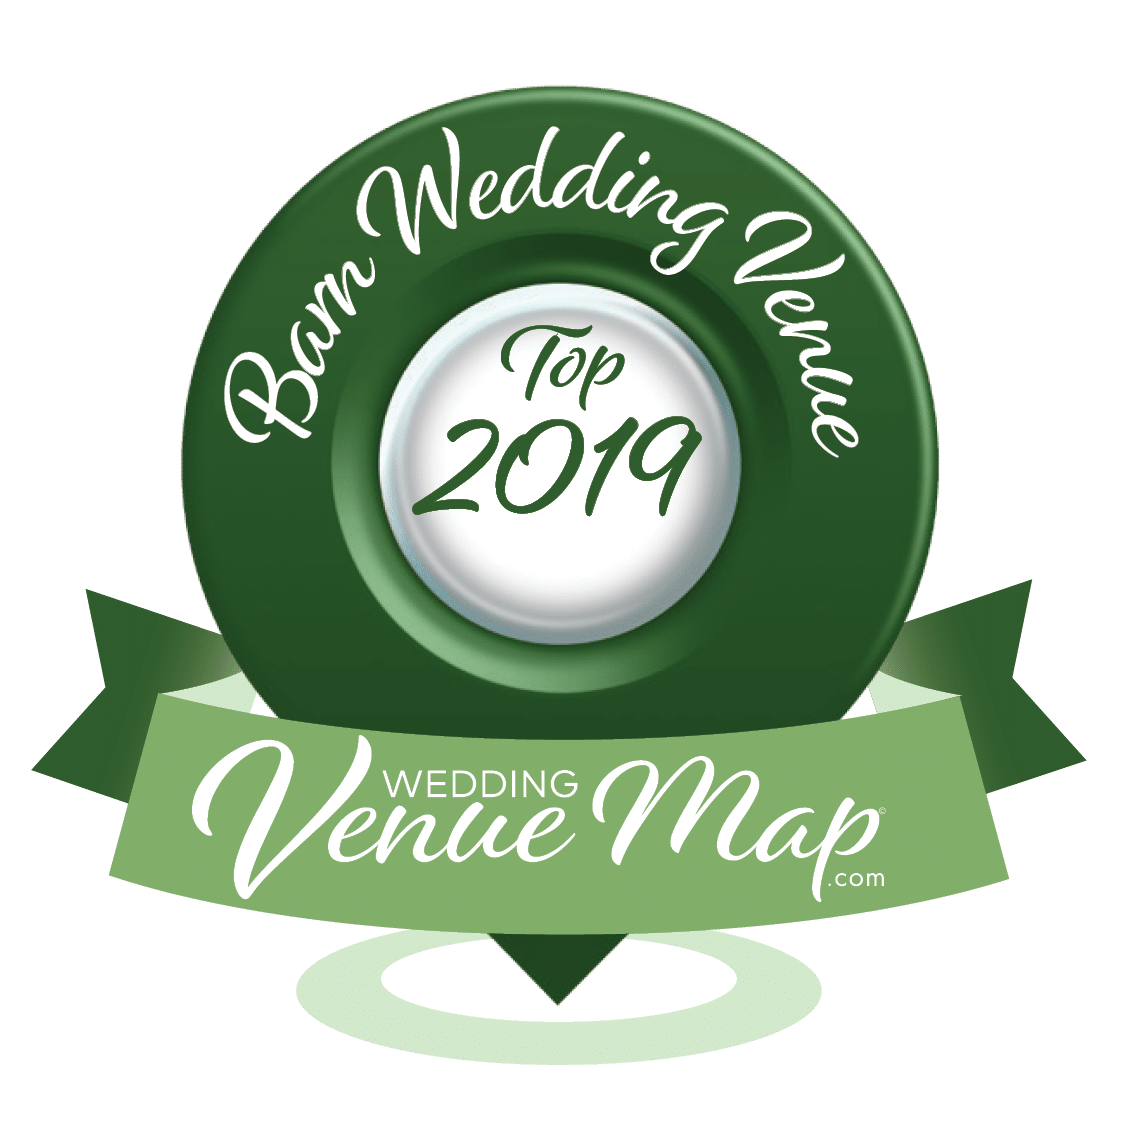 Top 2019 Barn Wedding Venues